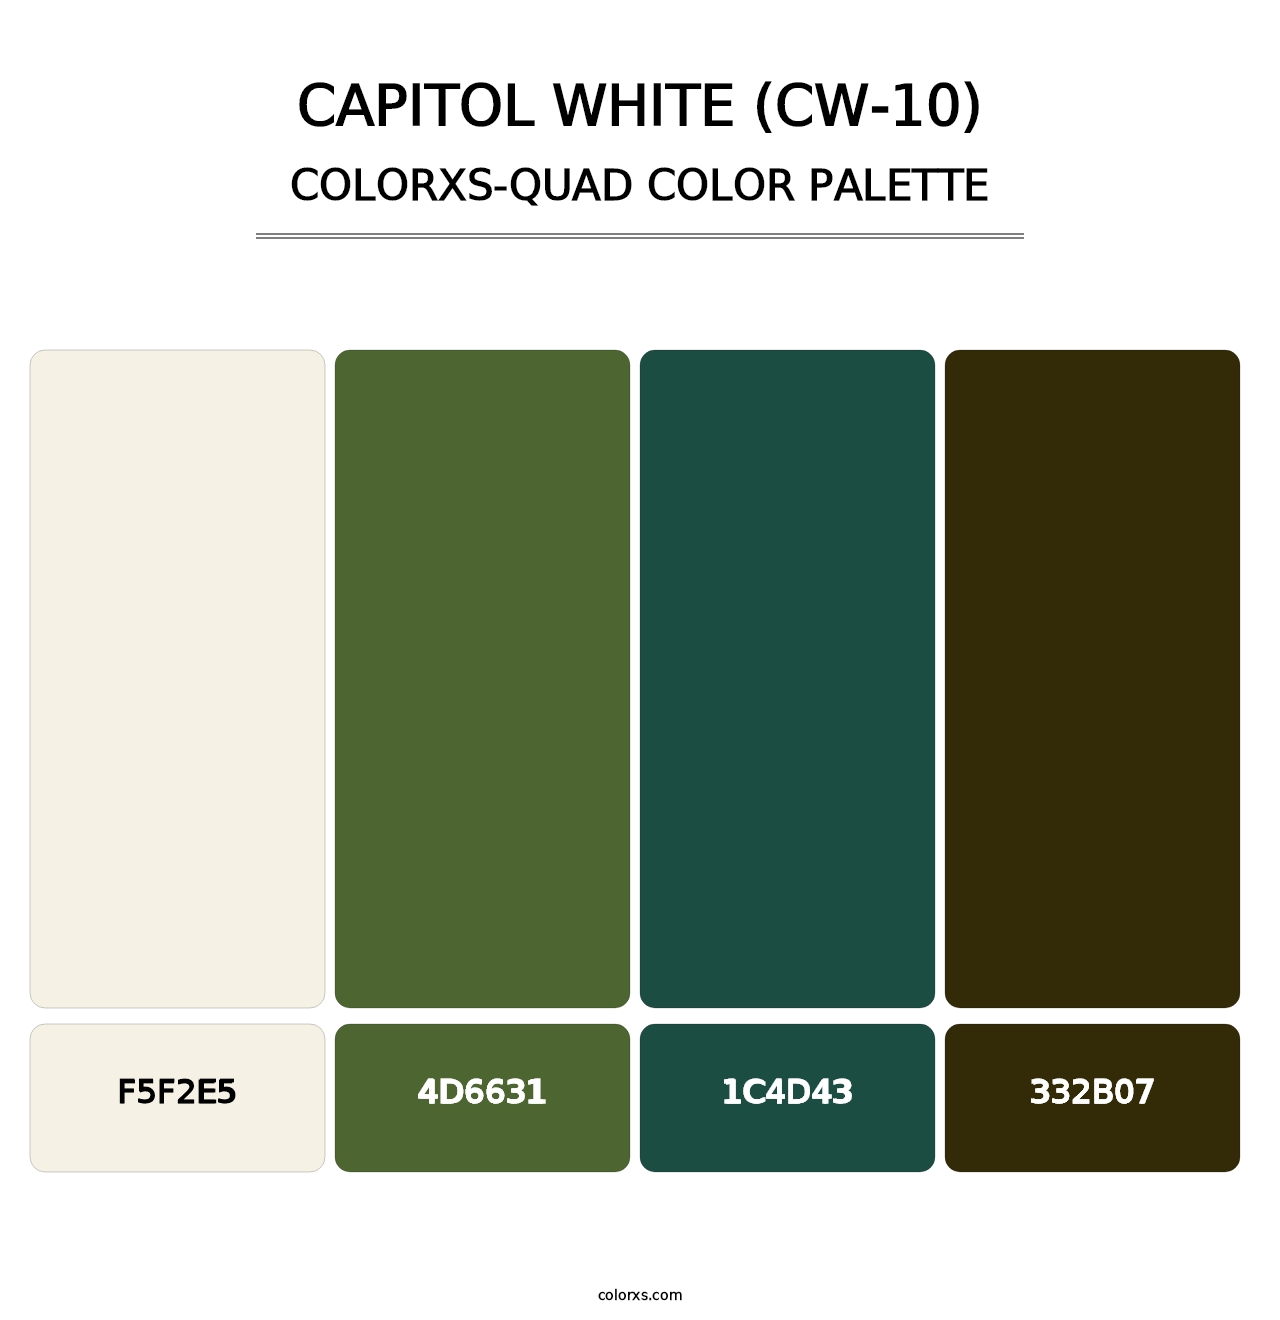 Capitol White (CW-10) - Colorxs Quad Palette